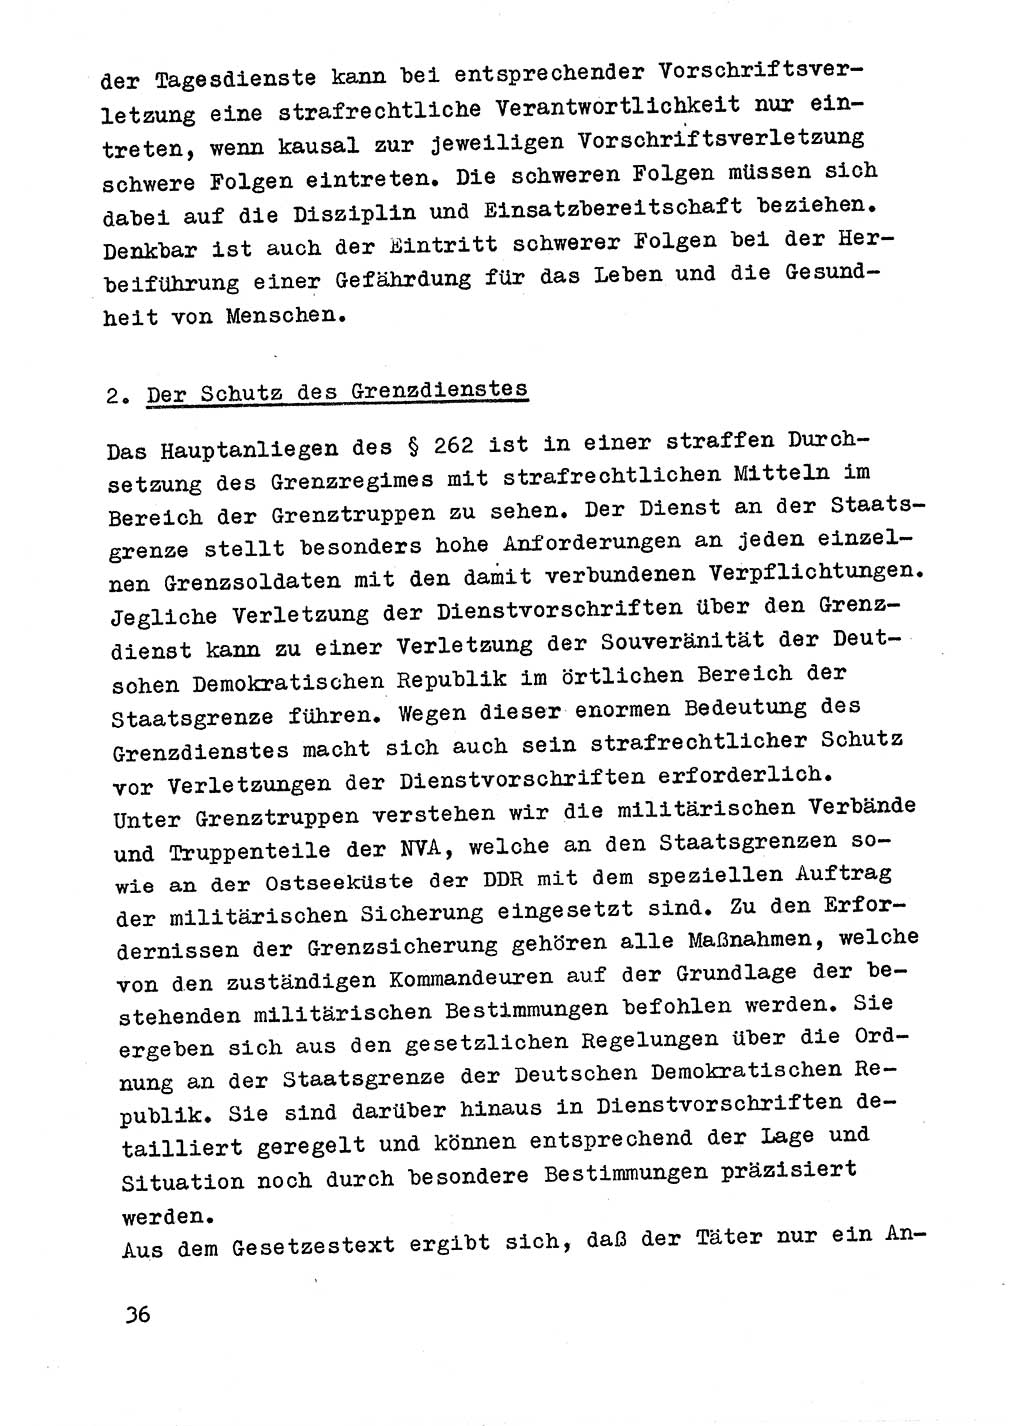 Strafrecht der DDR (Deutsche Demokratische Republik), Besonderer Teil, Lehrmaterial, Heft 9 1969, Seite 36 (Strafr. DDR BT Lehrmat. H. 9 1969, S. 36)